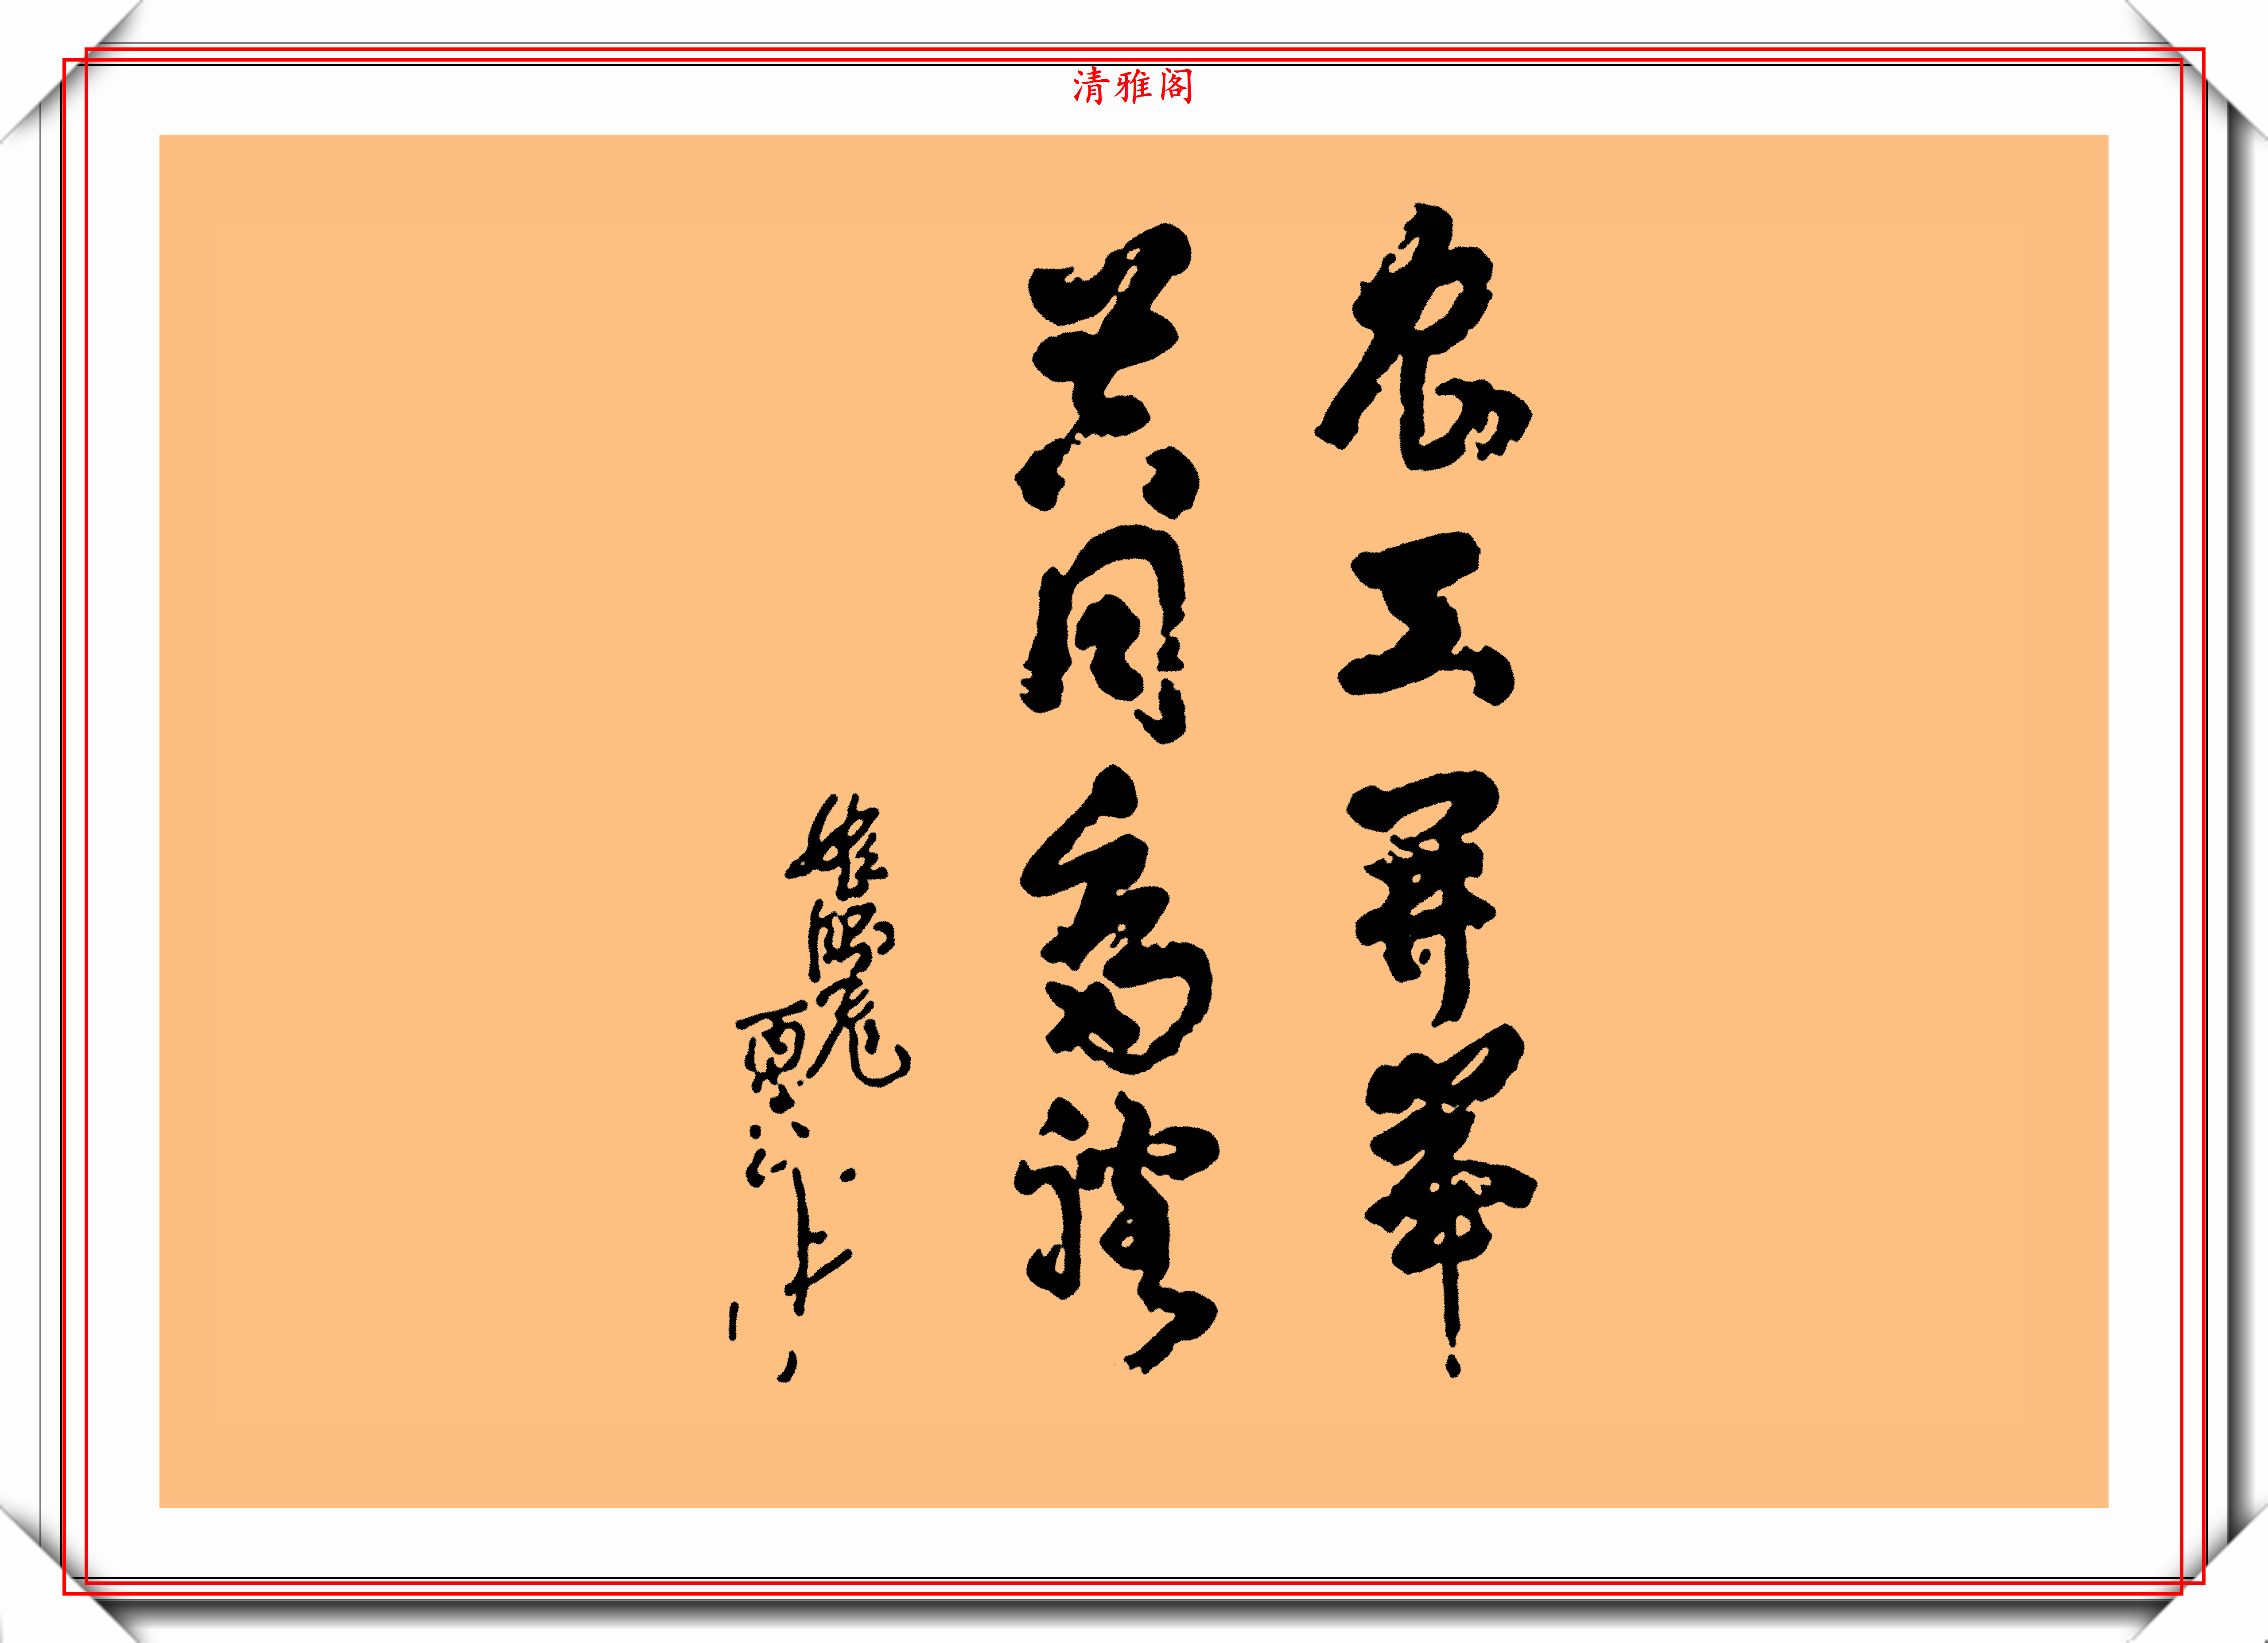 姬鹏飞同志的8幅书法题字展,大气磅礴圆润自然,网友:字如人也